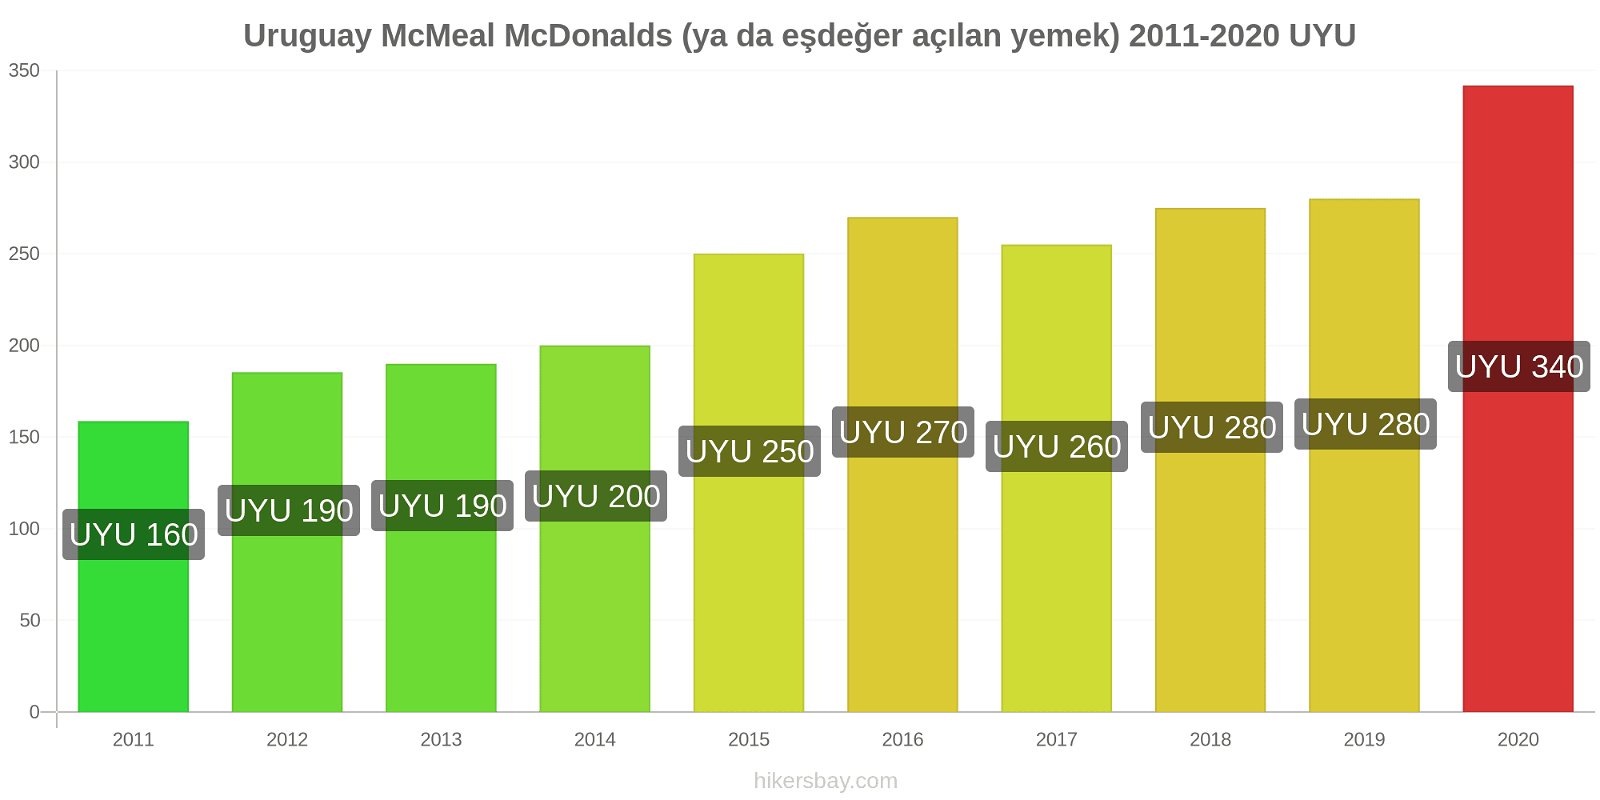 Uruguay fiyat değişiklikleri McMeal McDonalds (ya da eşdeğer açılan yemek) hikersbay.com